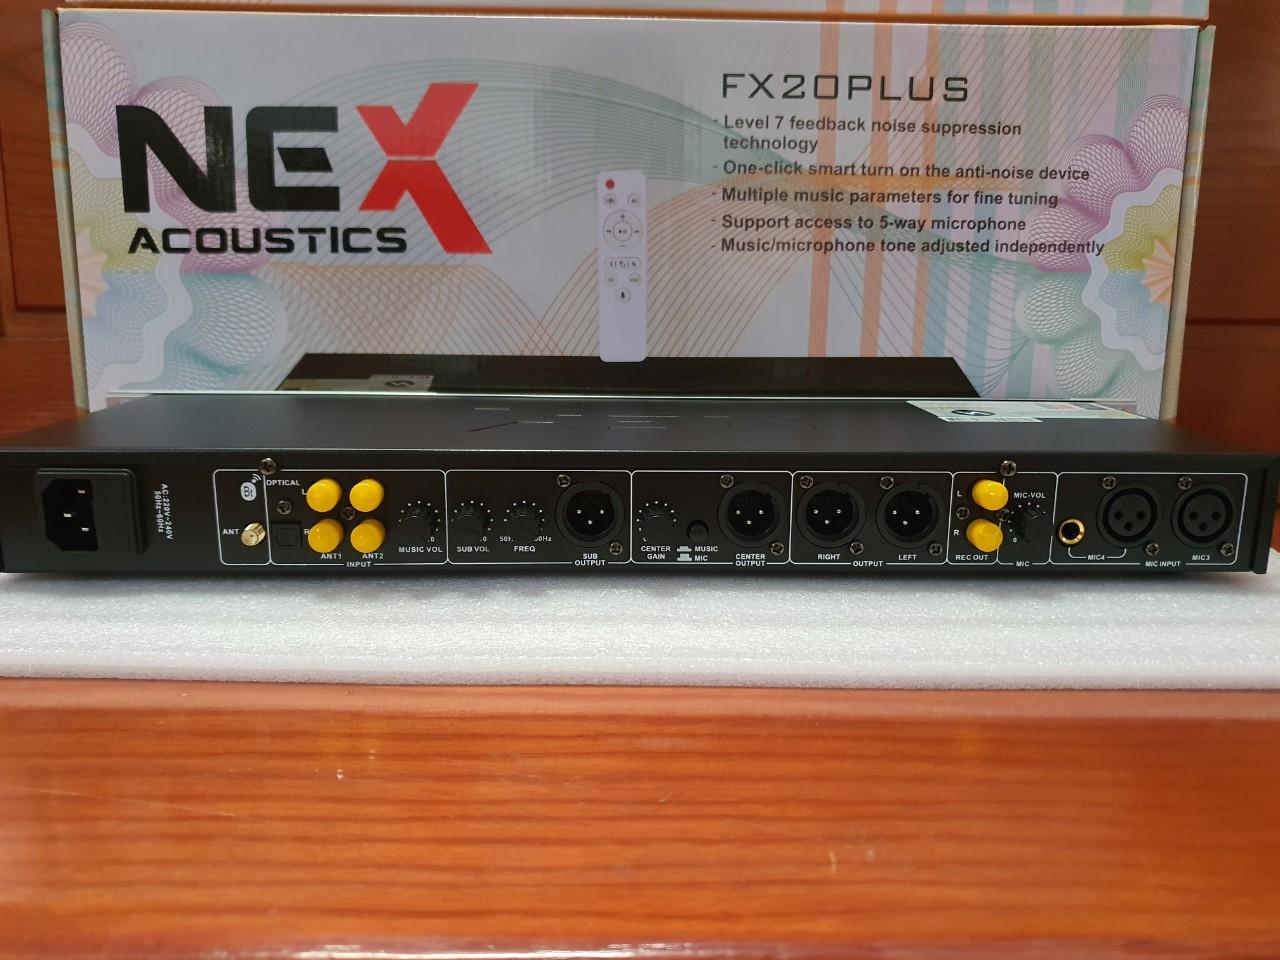 Vang cơ NEX Acoustic FX20 Plus, vang cơ Bluetooth chống hú NEX Acoustic FX20 Plus.